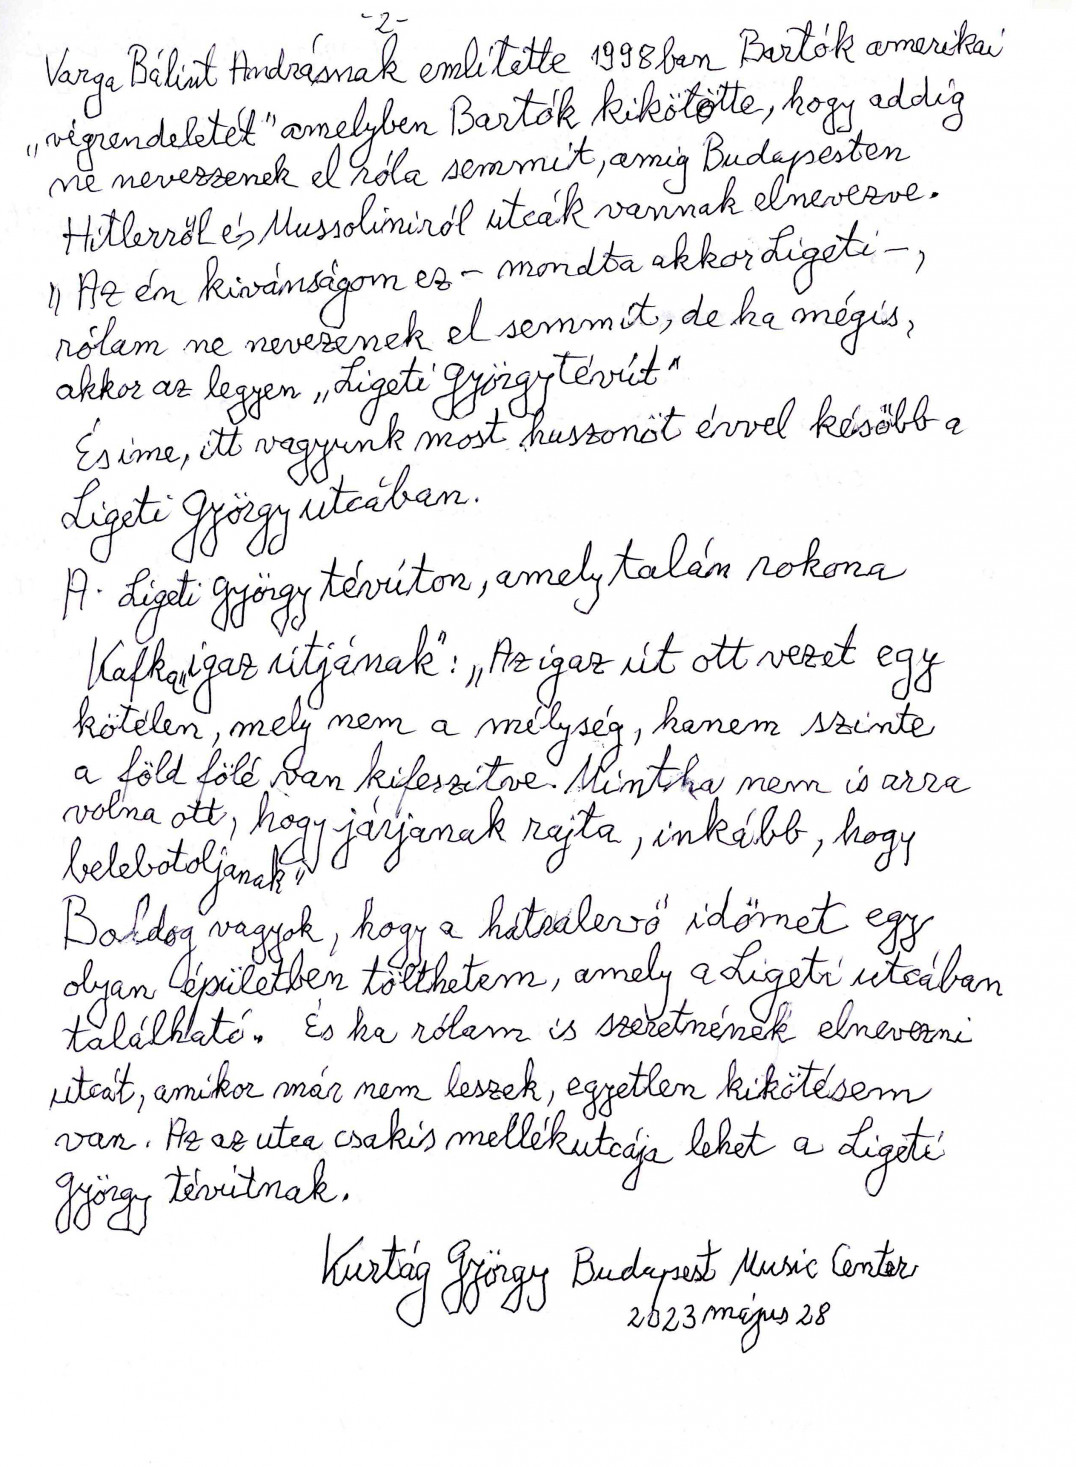 Kurtág György utcaavató beszédének kézirata 2